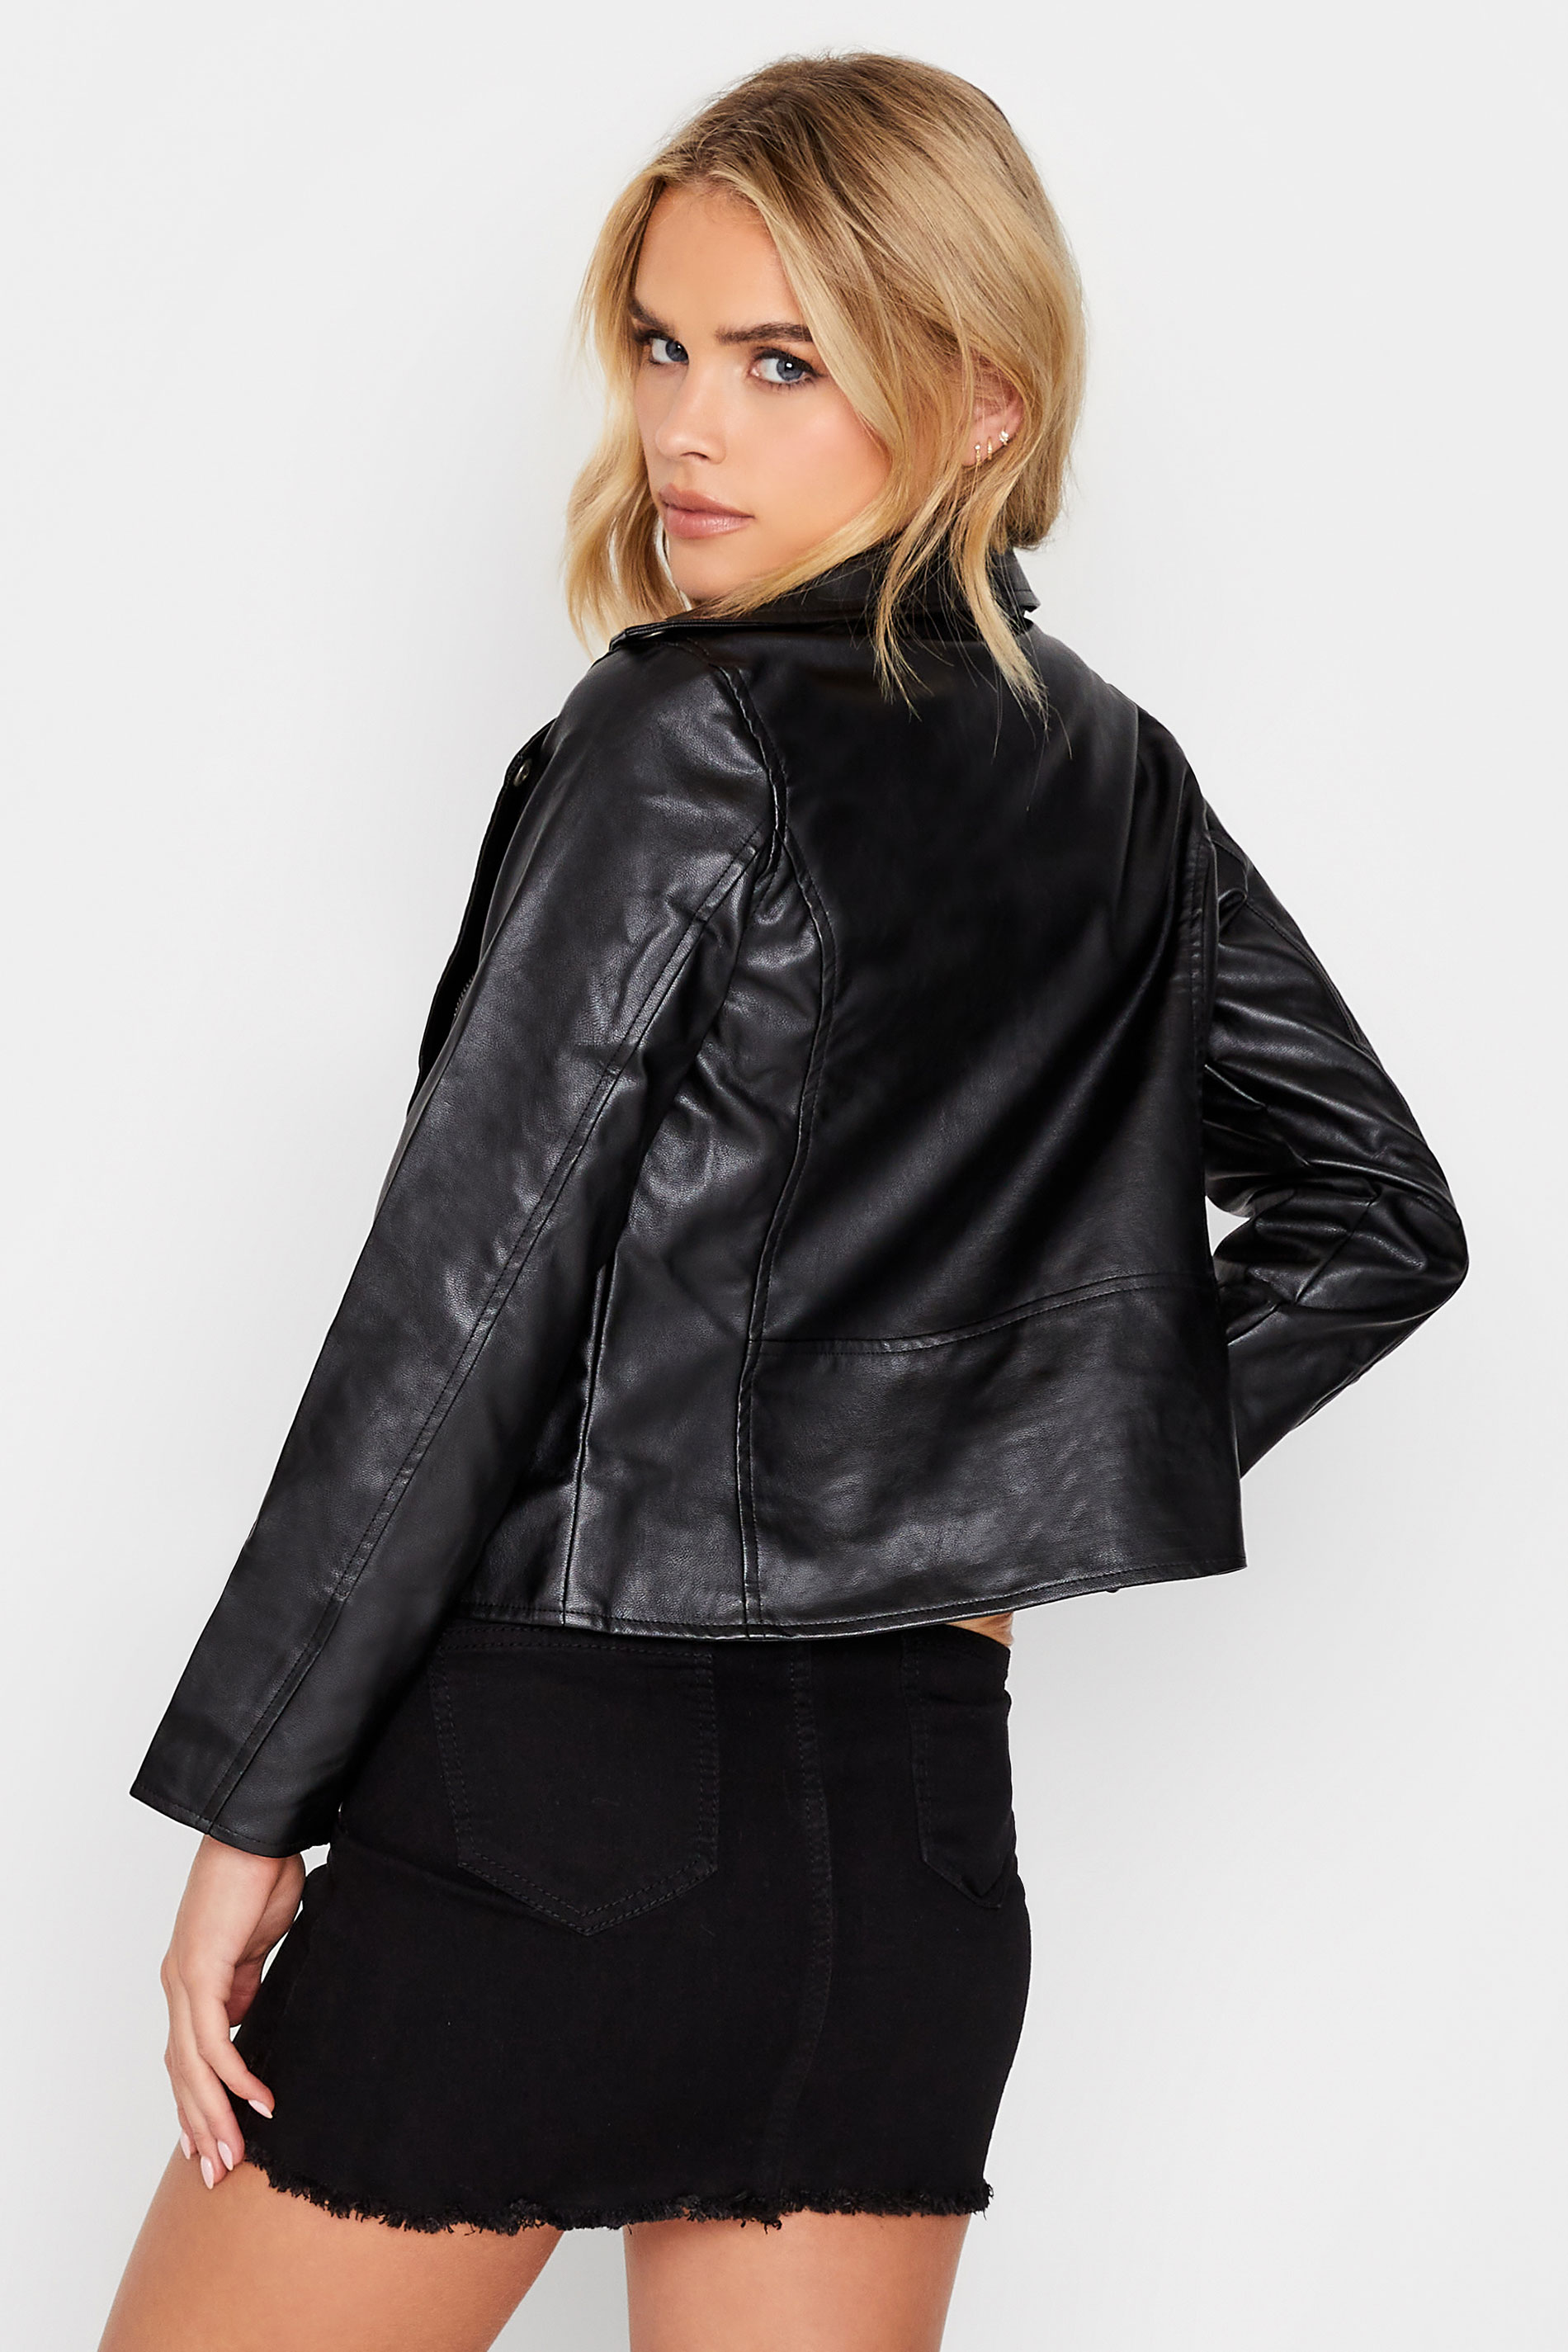 Petite Black Faux Leather Biker Jacket | PixieGirl  2